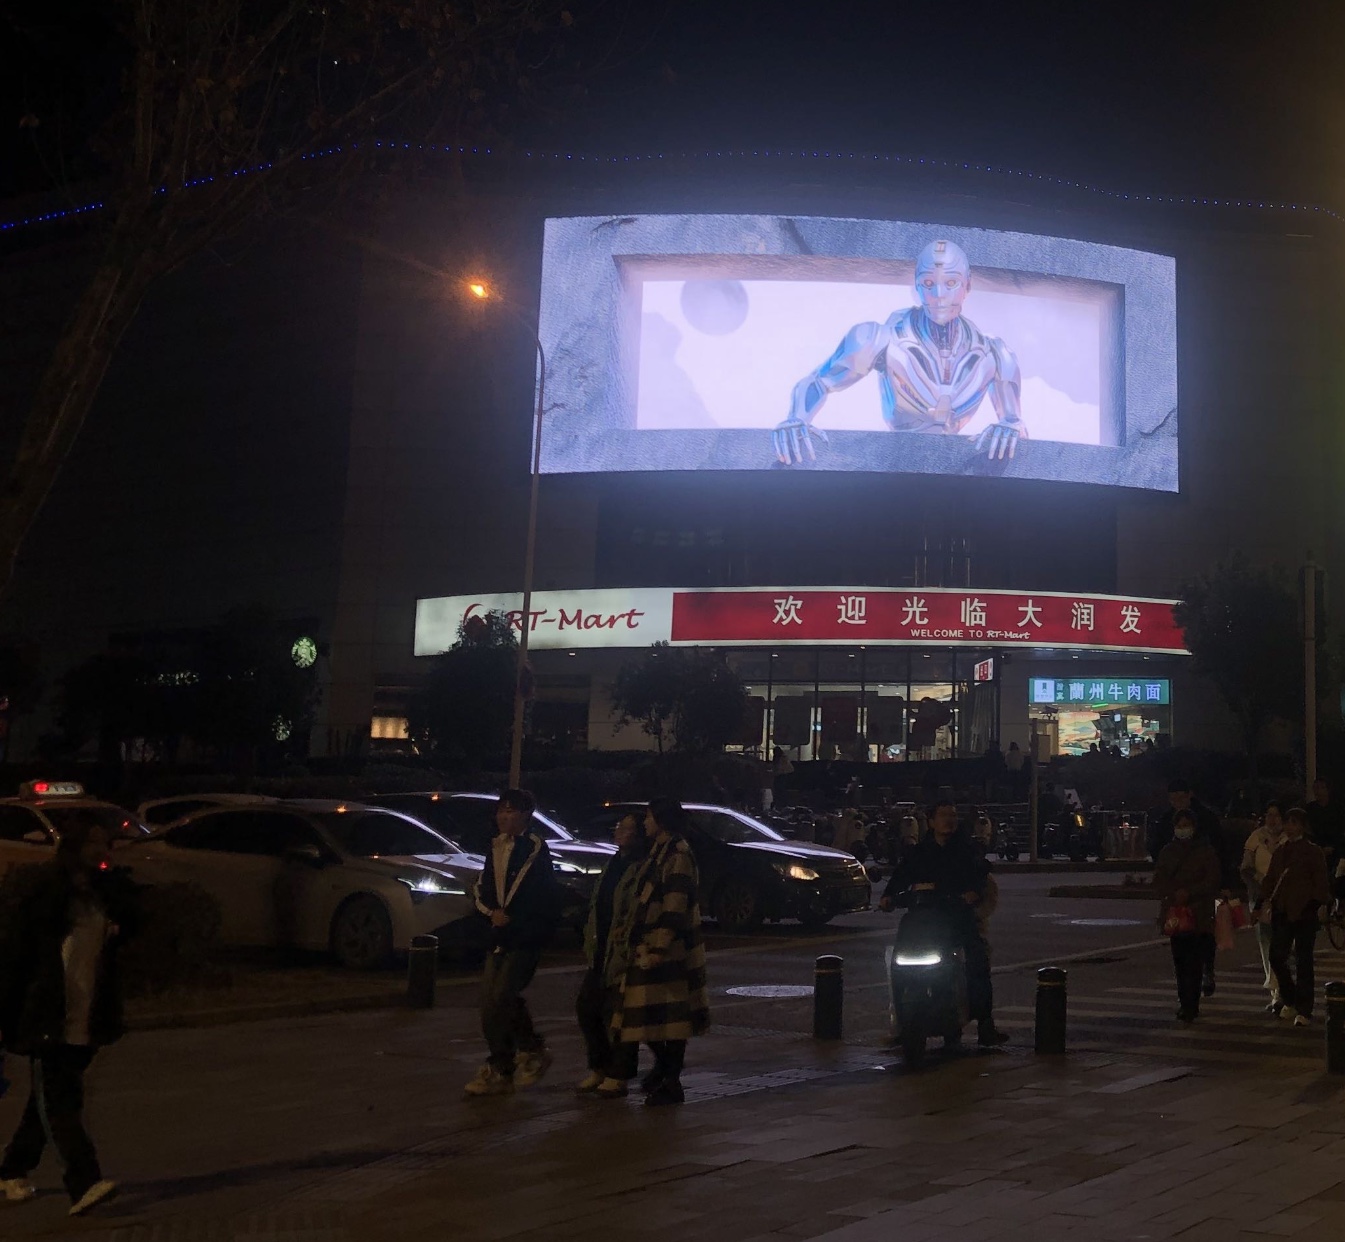 武汉江汉区解放大道/江汉路大润发超市高清LED显示屏(裸眼3D)地标建筑媒体LED屏